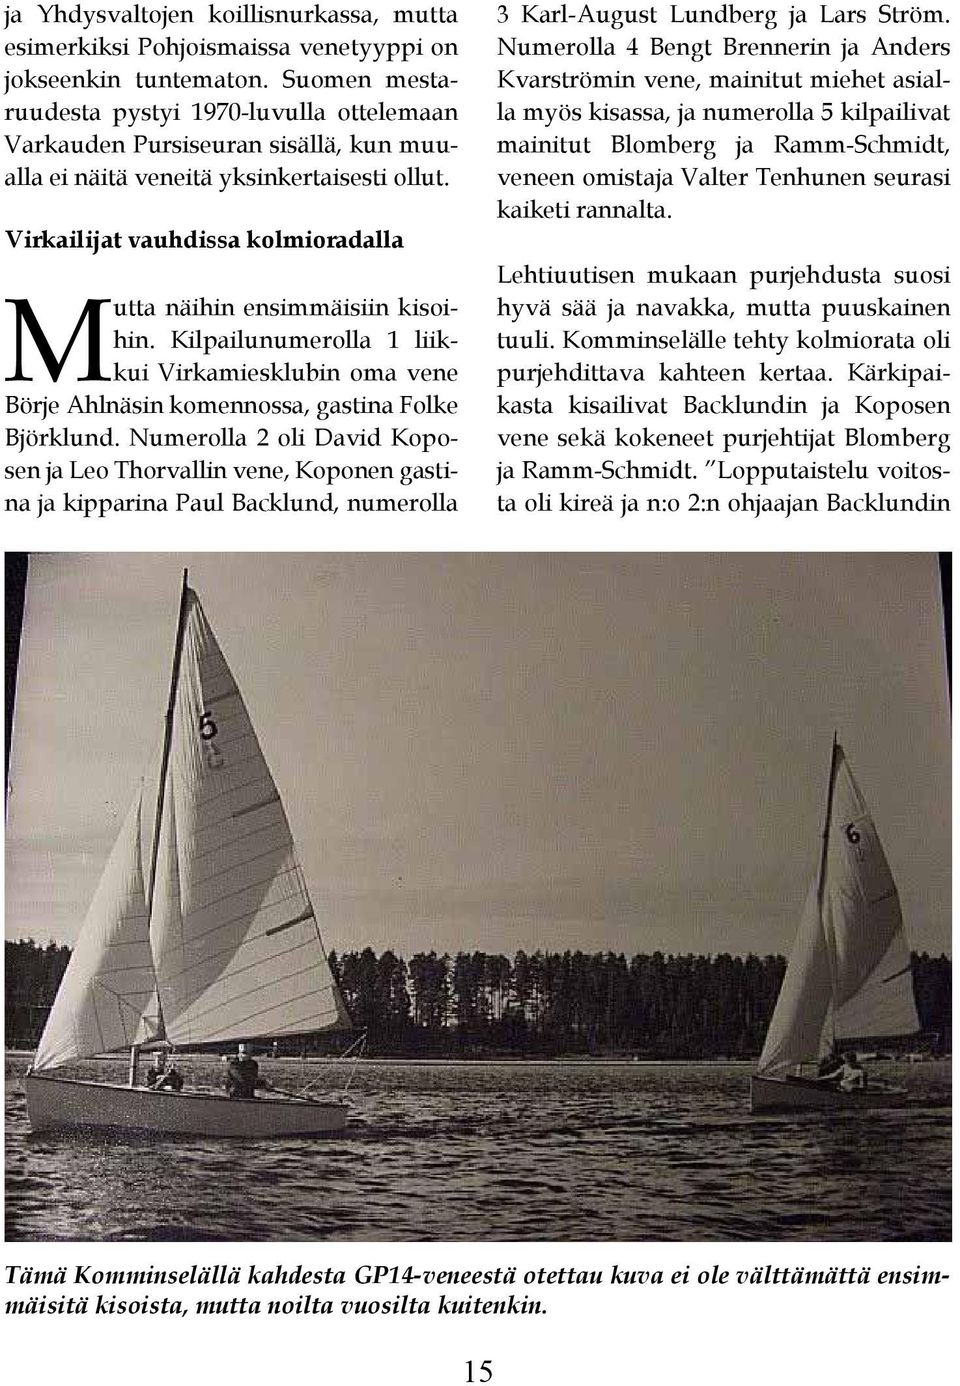 Virkailijat vauhdissa kolmioradalla Mutta näihin ensimmäisiin kisoihin. Kilpailunumerolla 1 liikkui Virkamiesklubin oma vene Börje Ahlnäsin komennossa, gastina Folke Björklund.